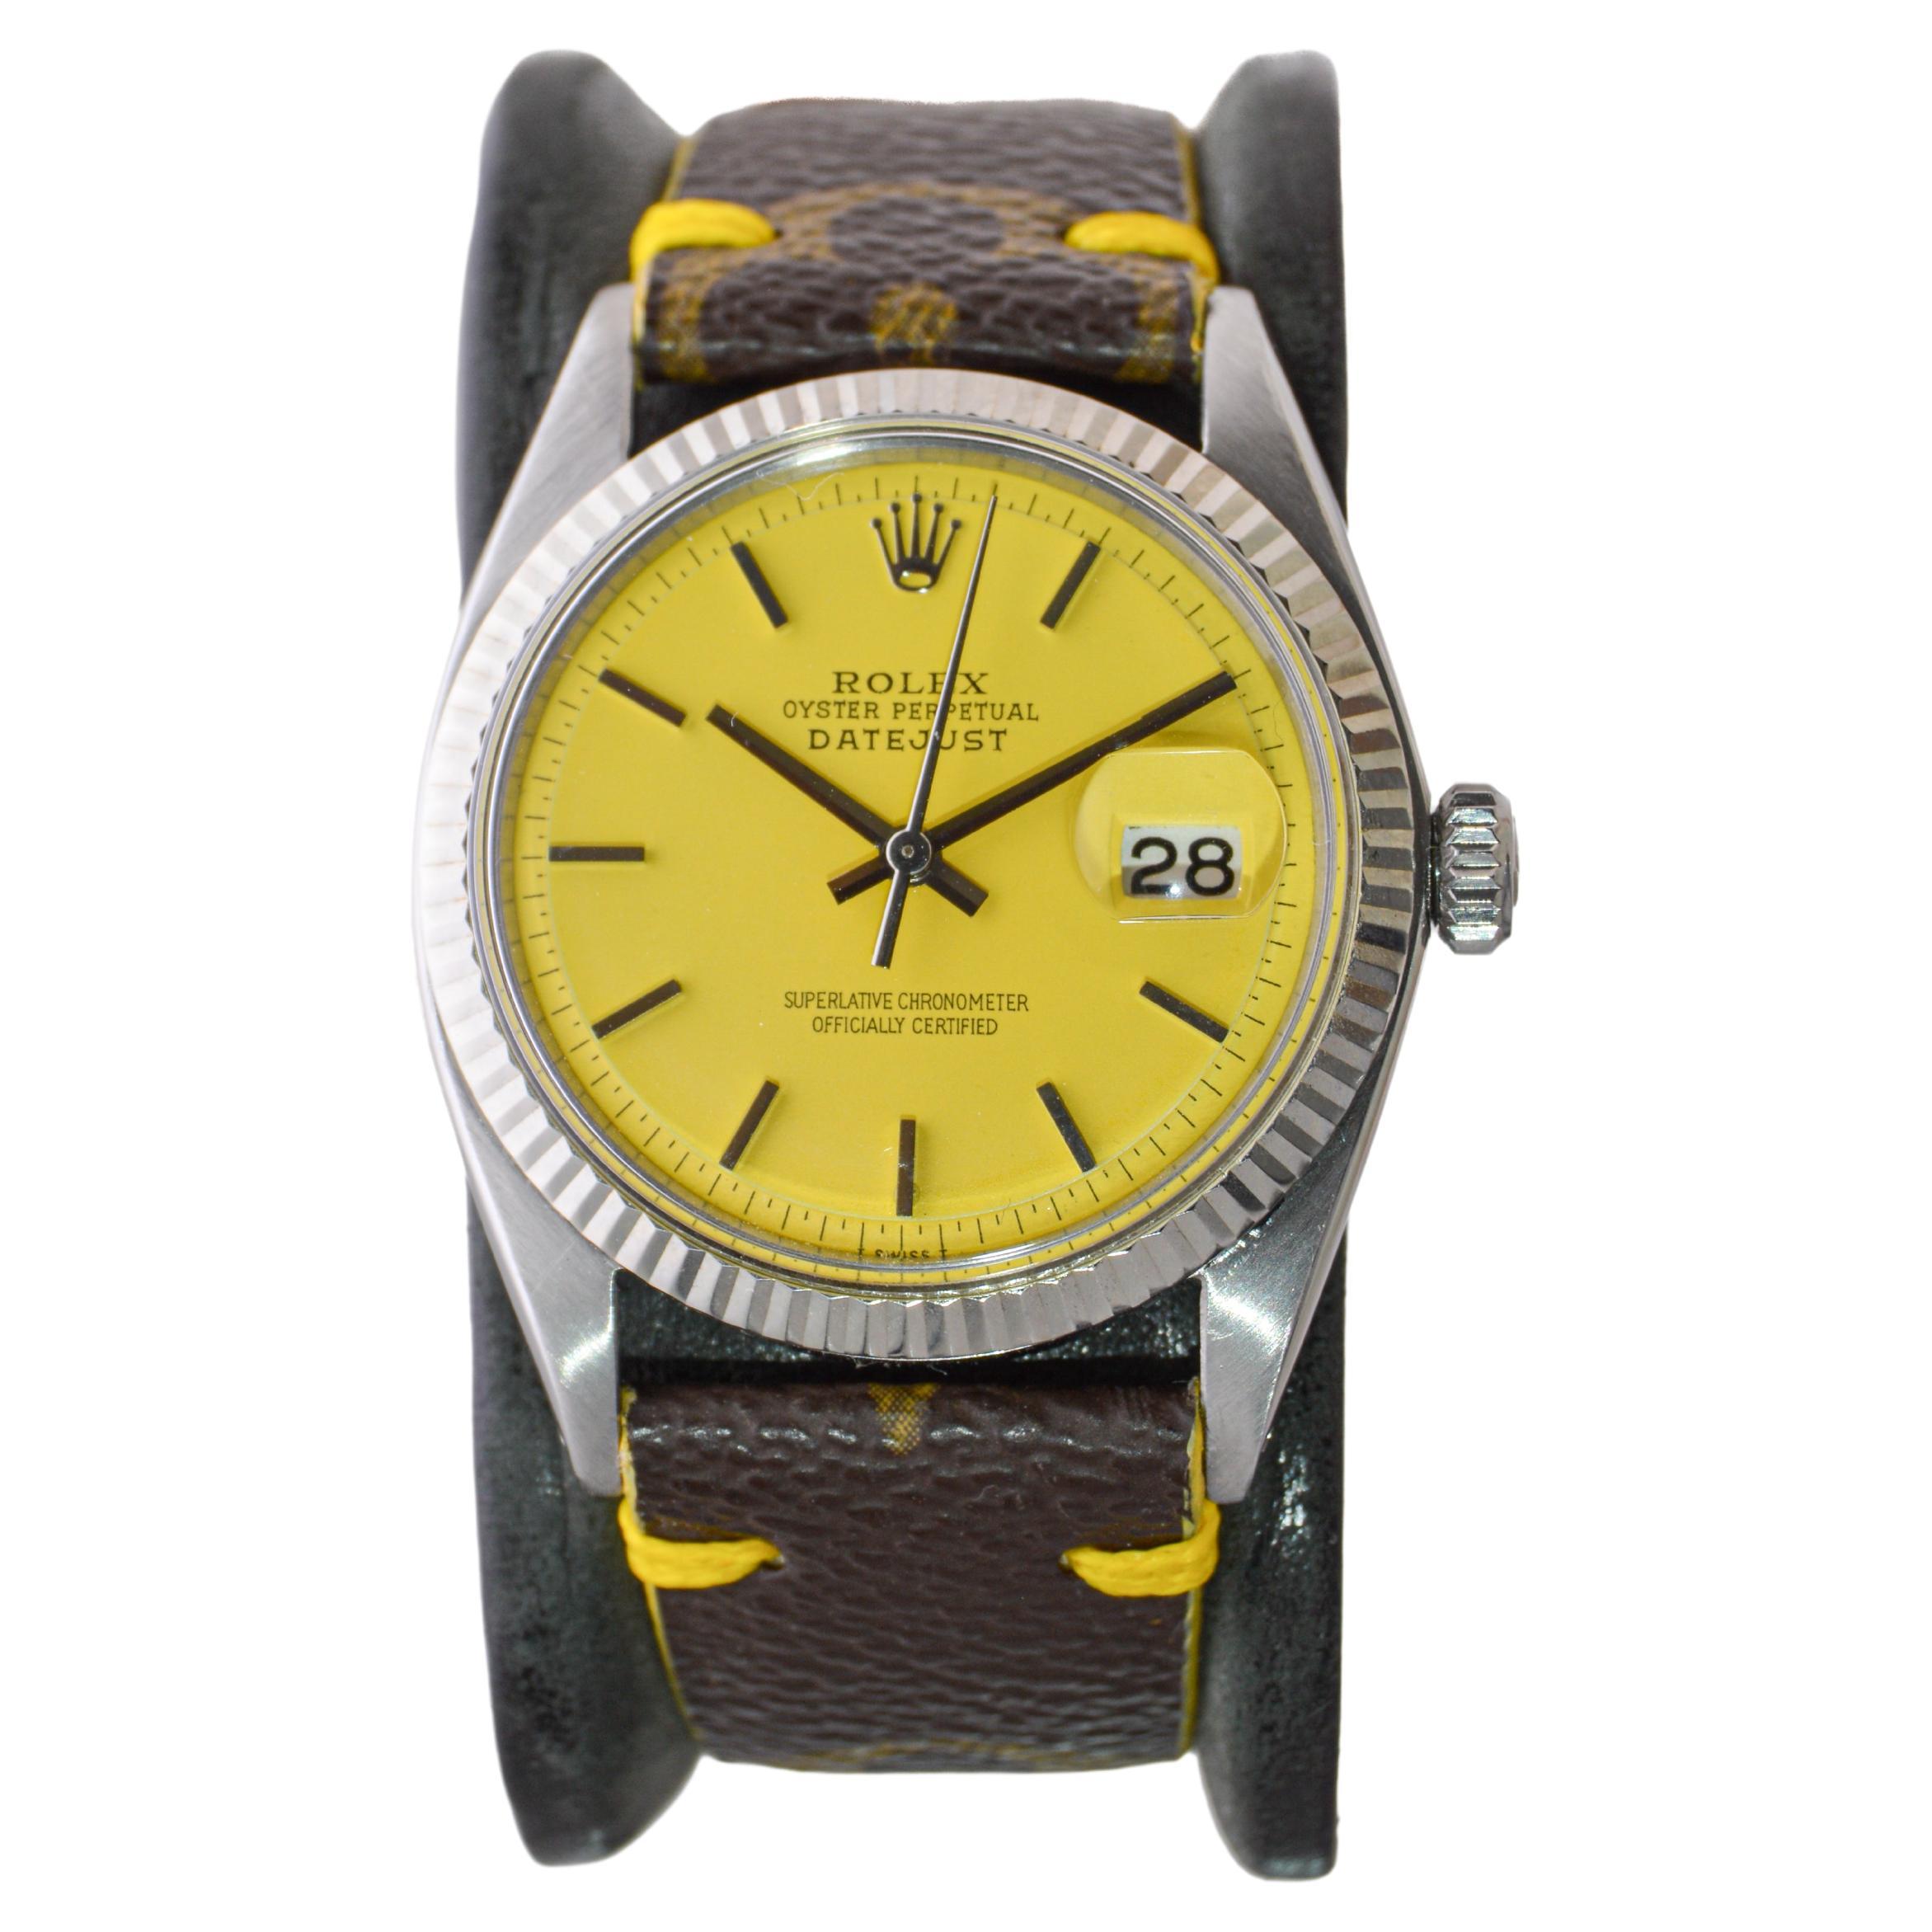 Rolex Oyster Perpetual Datejust avec cadran jaune personnalisé et bracelet LV, années 1960